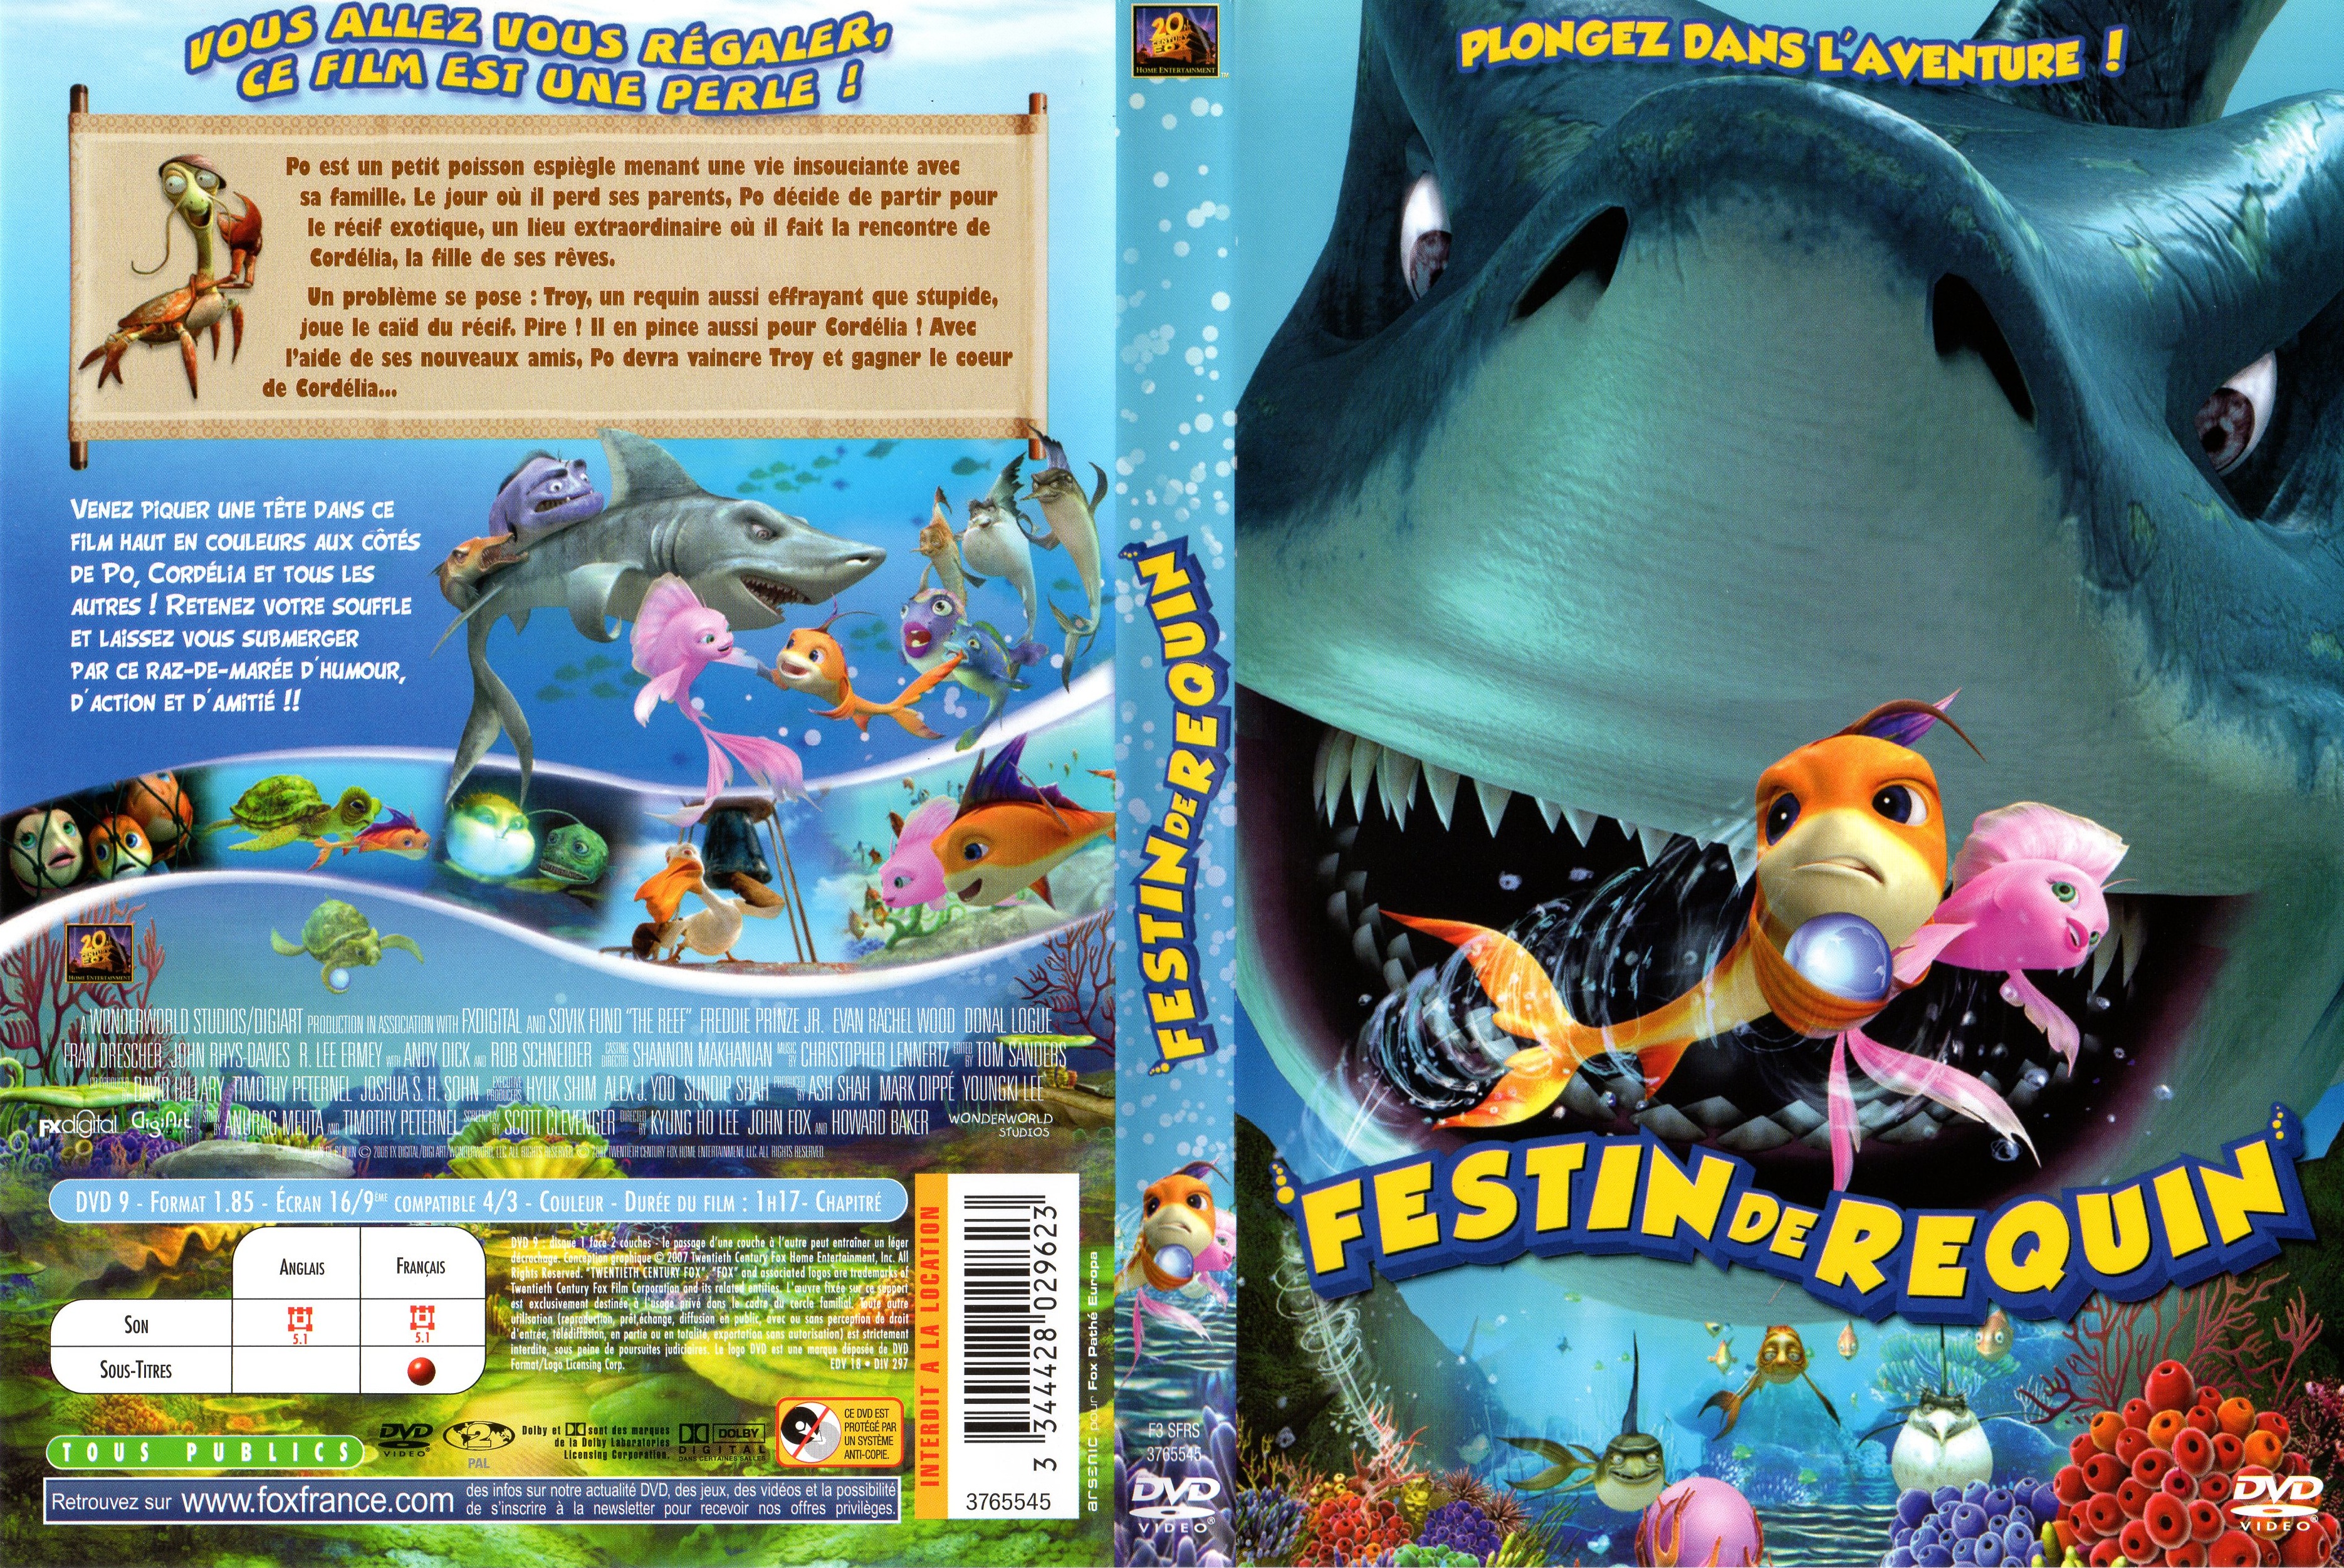 Jaquette DVD Festin de requin